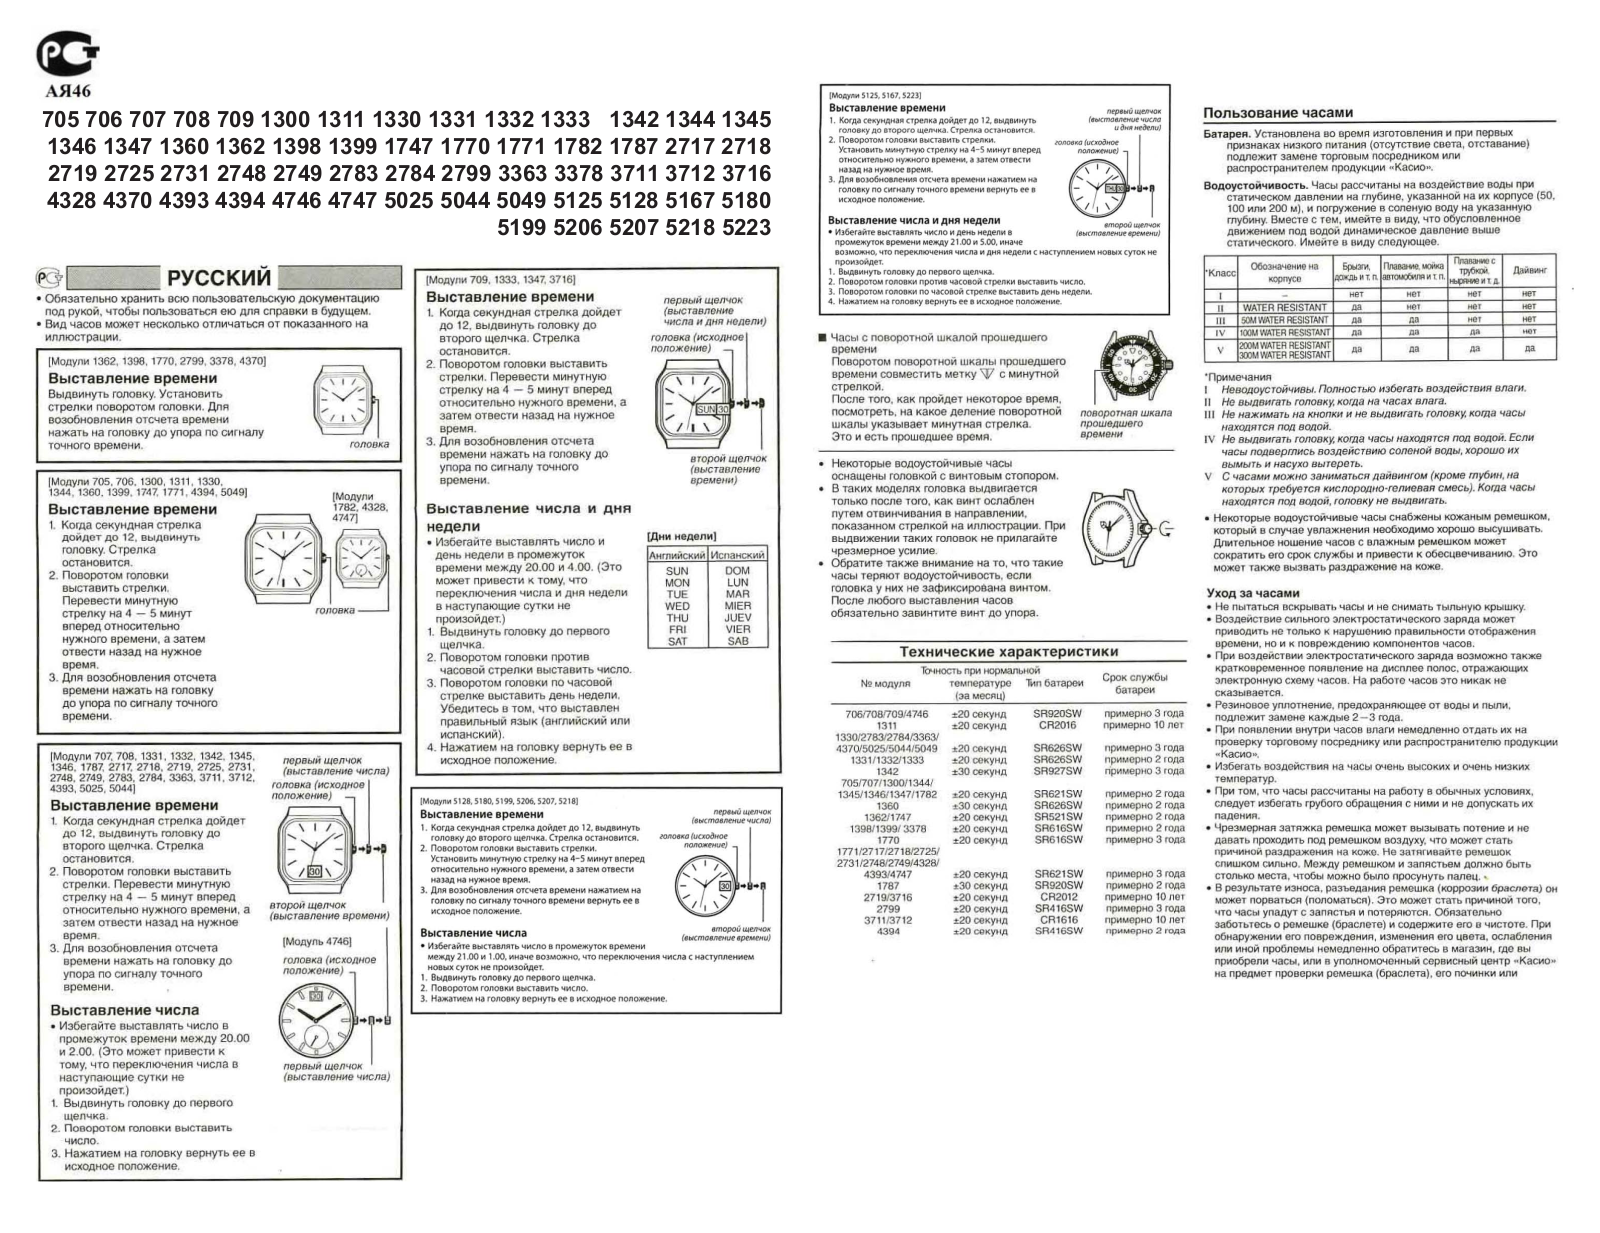 Casio EF-130D-1A5 User Manual